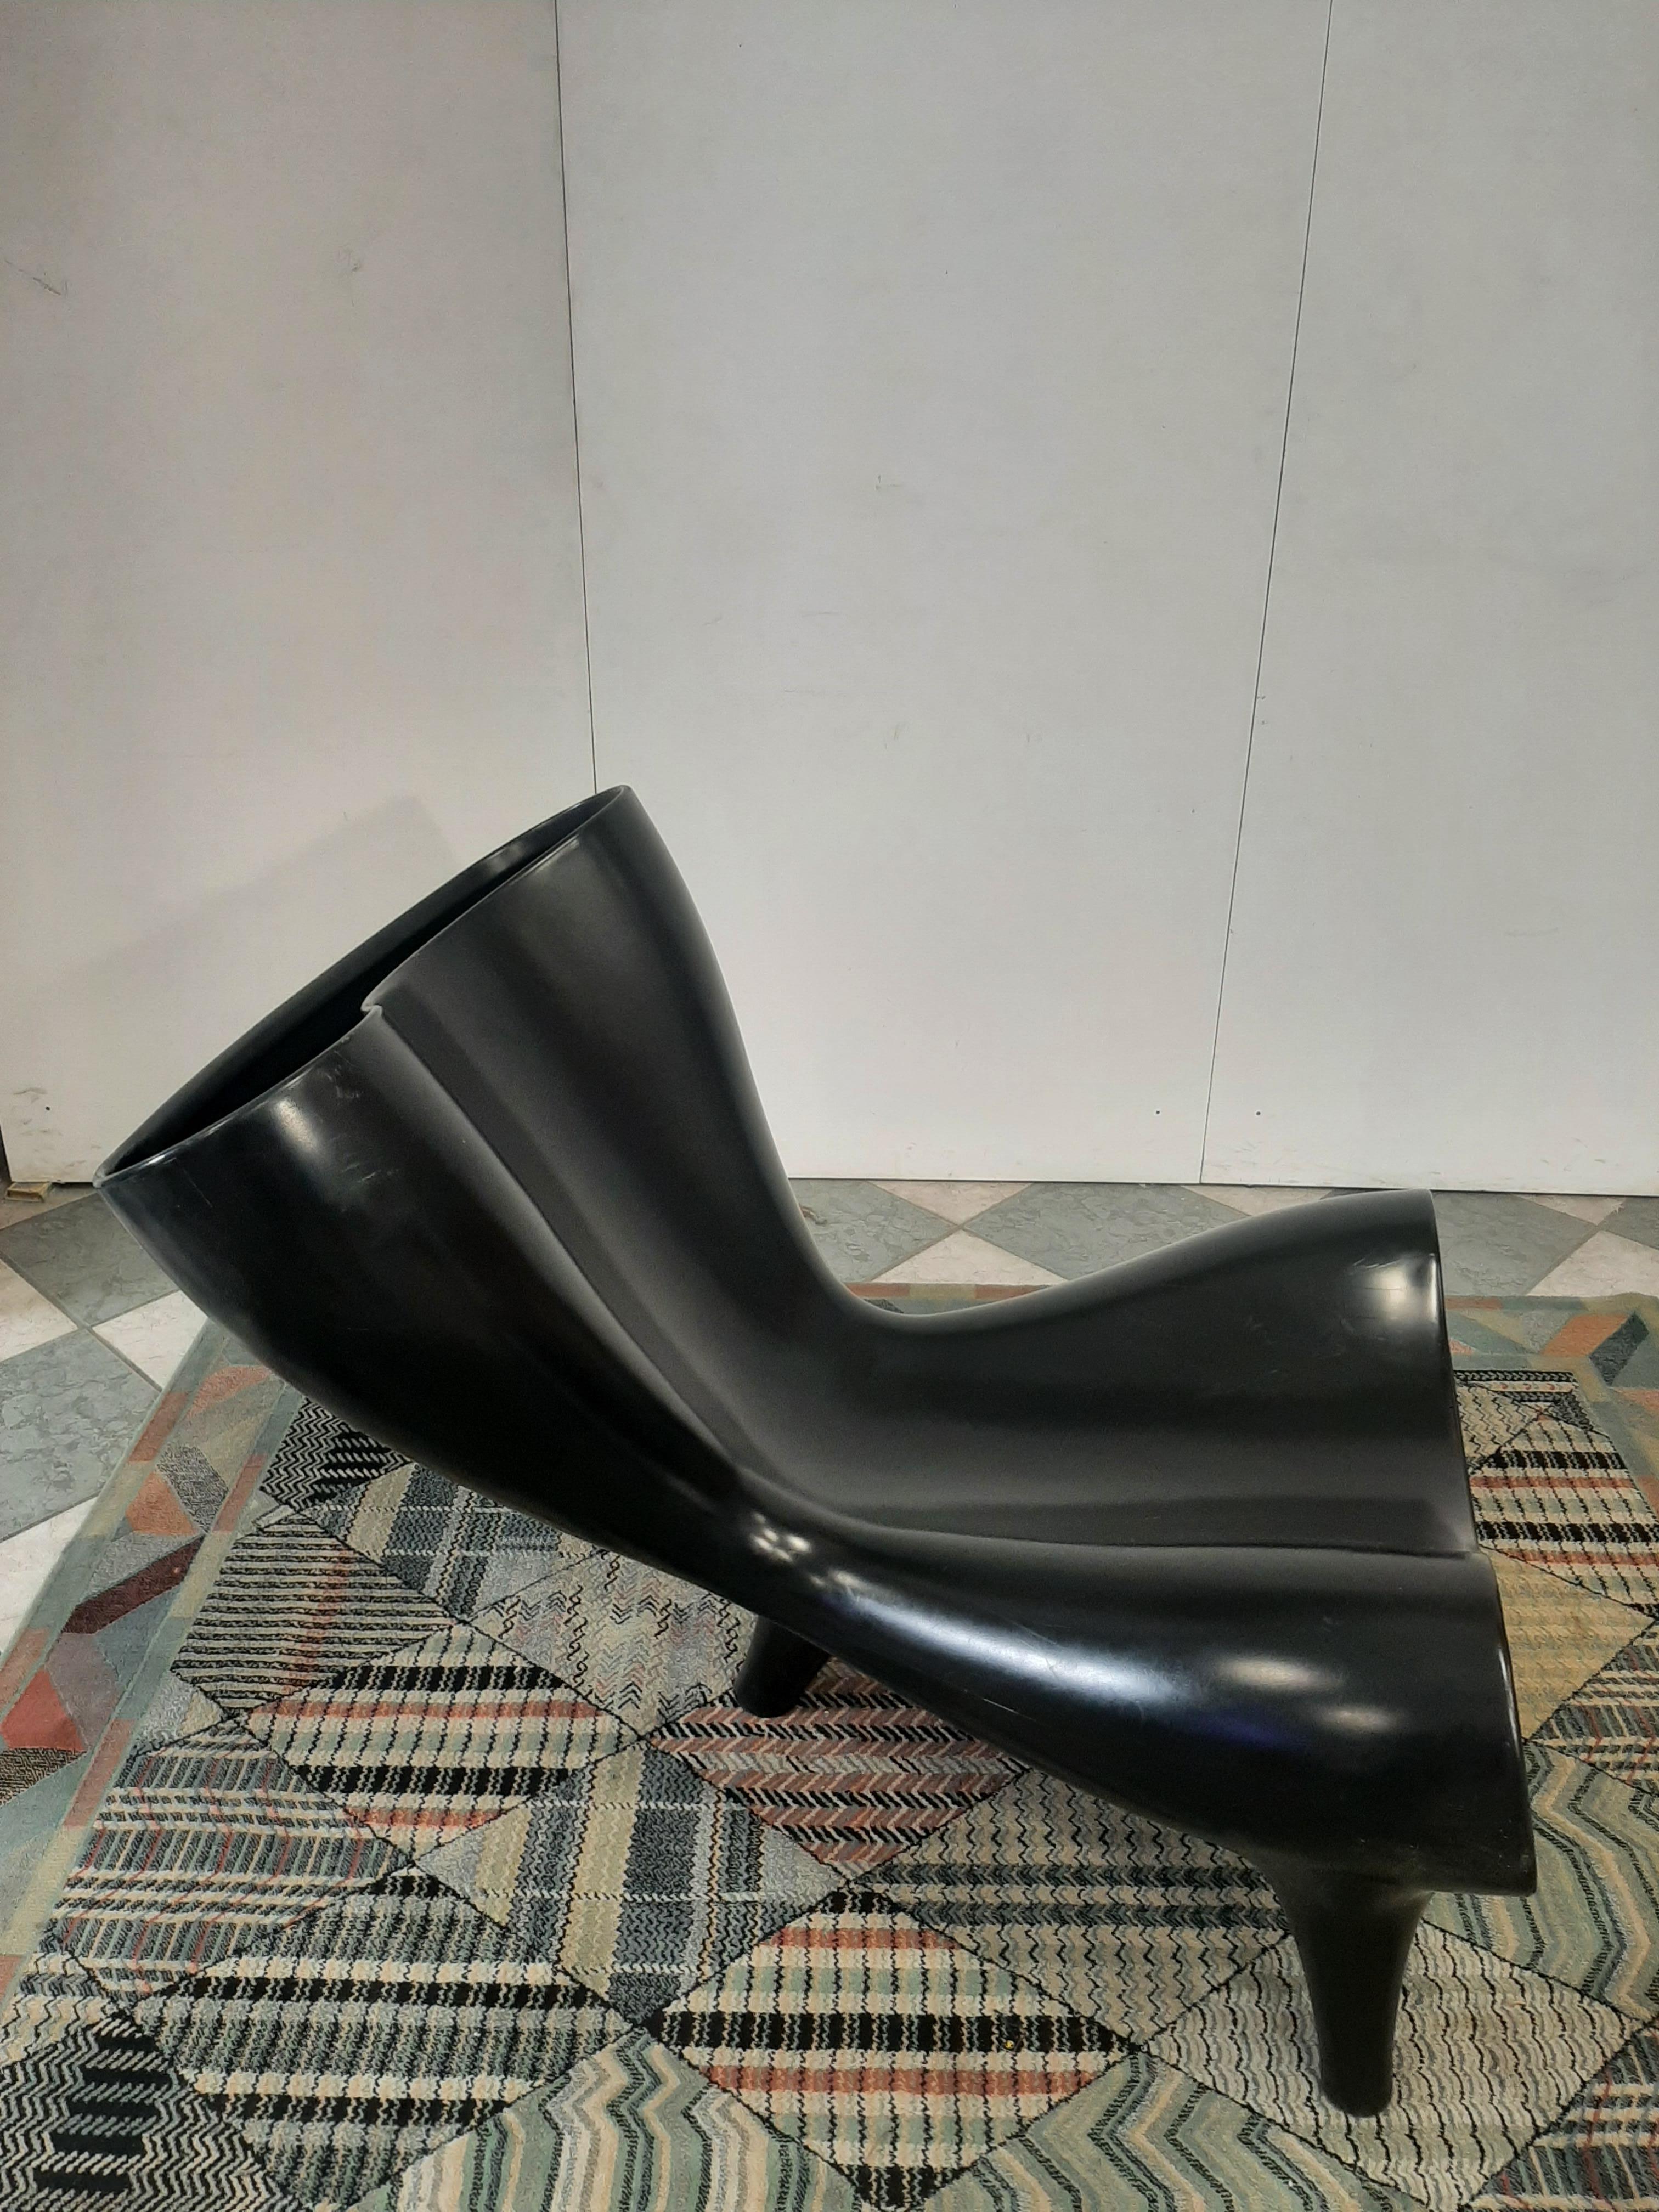 Sessel Modell Orgone entworfen von Marc Newson und hergestellt von Cappellini Italia.
Skulptur Sessel aus Polypropylen/Kunststoff für den Innen- und Außenbereich. Marc Newson hat einen eleganten Stuhl mit einer organischen, umhüllenden Form